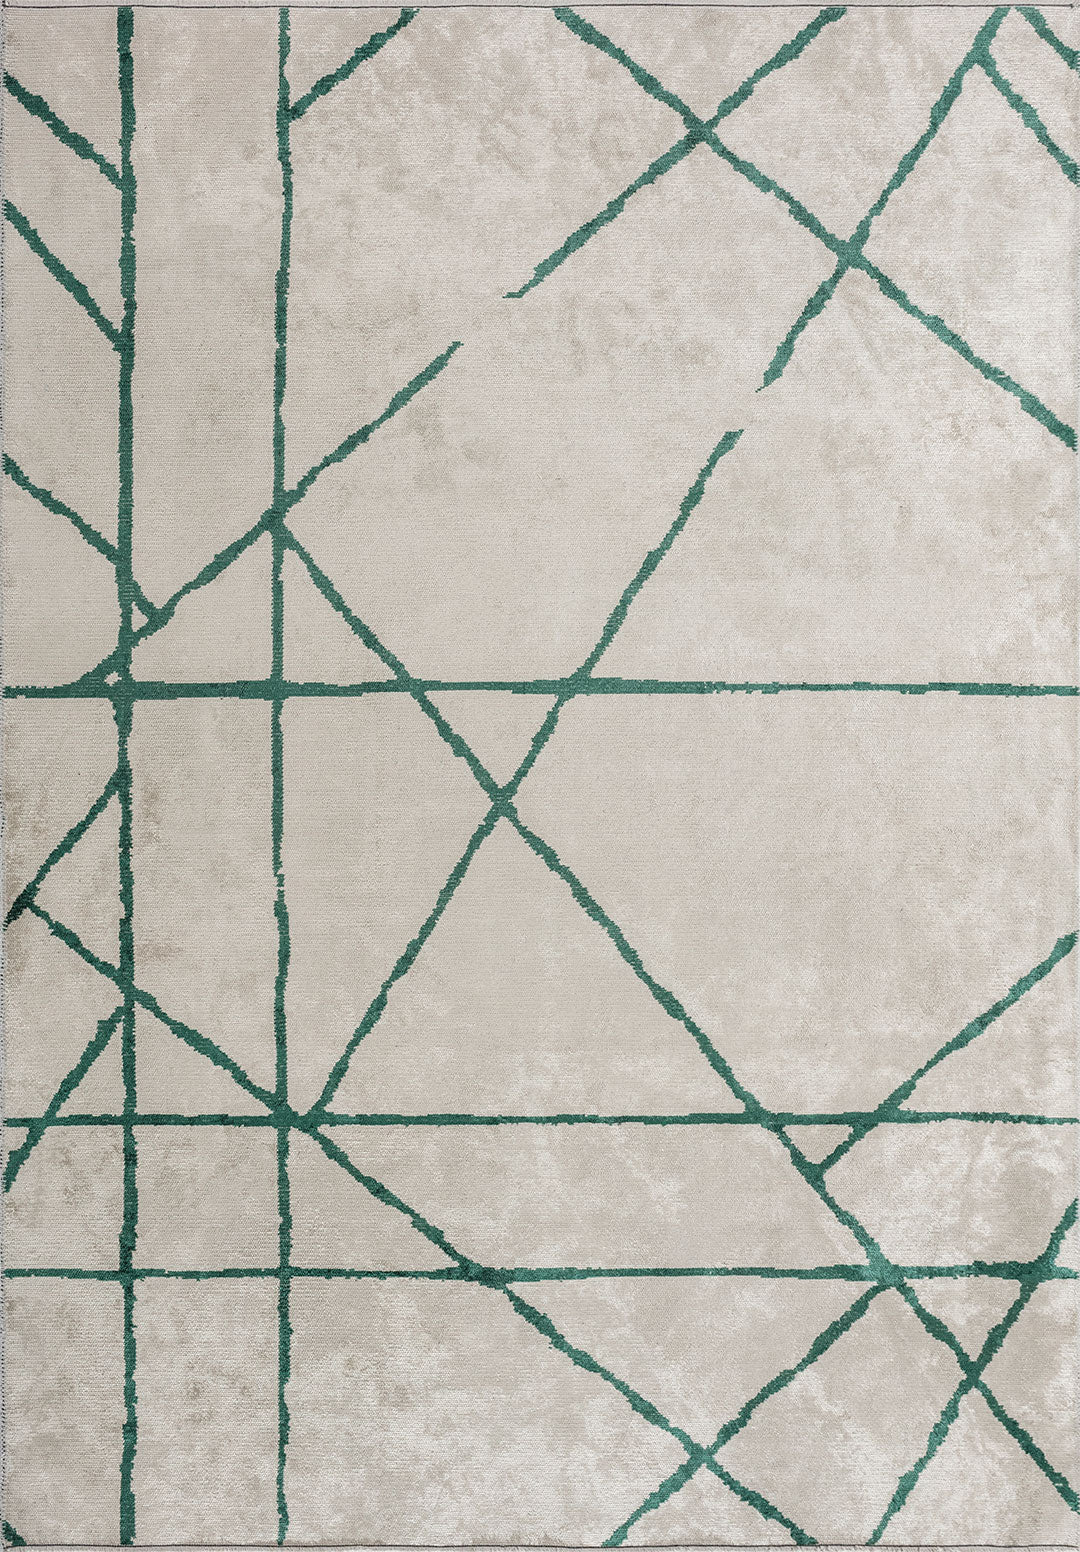 Grid White - Dark Green Rug Rugs - Venetto Design Venettodesign.com